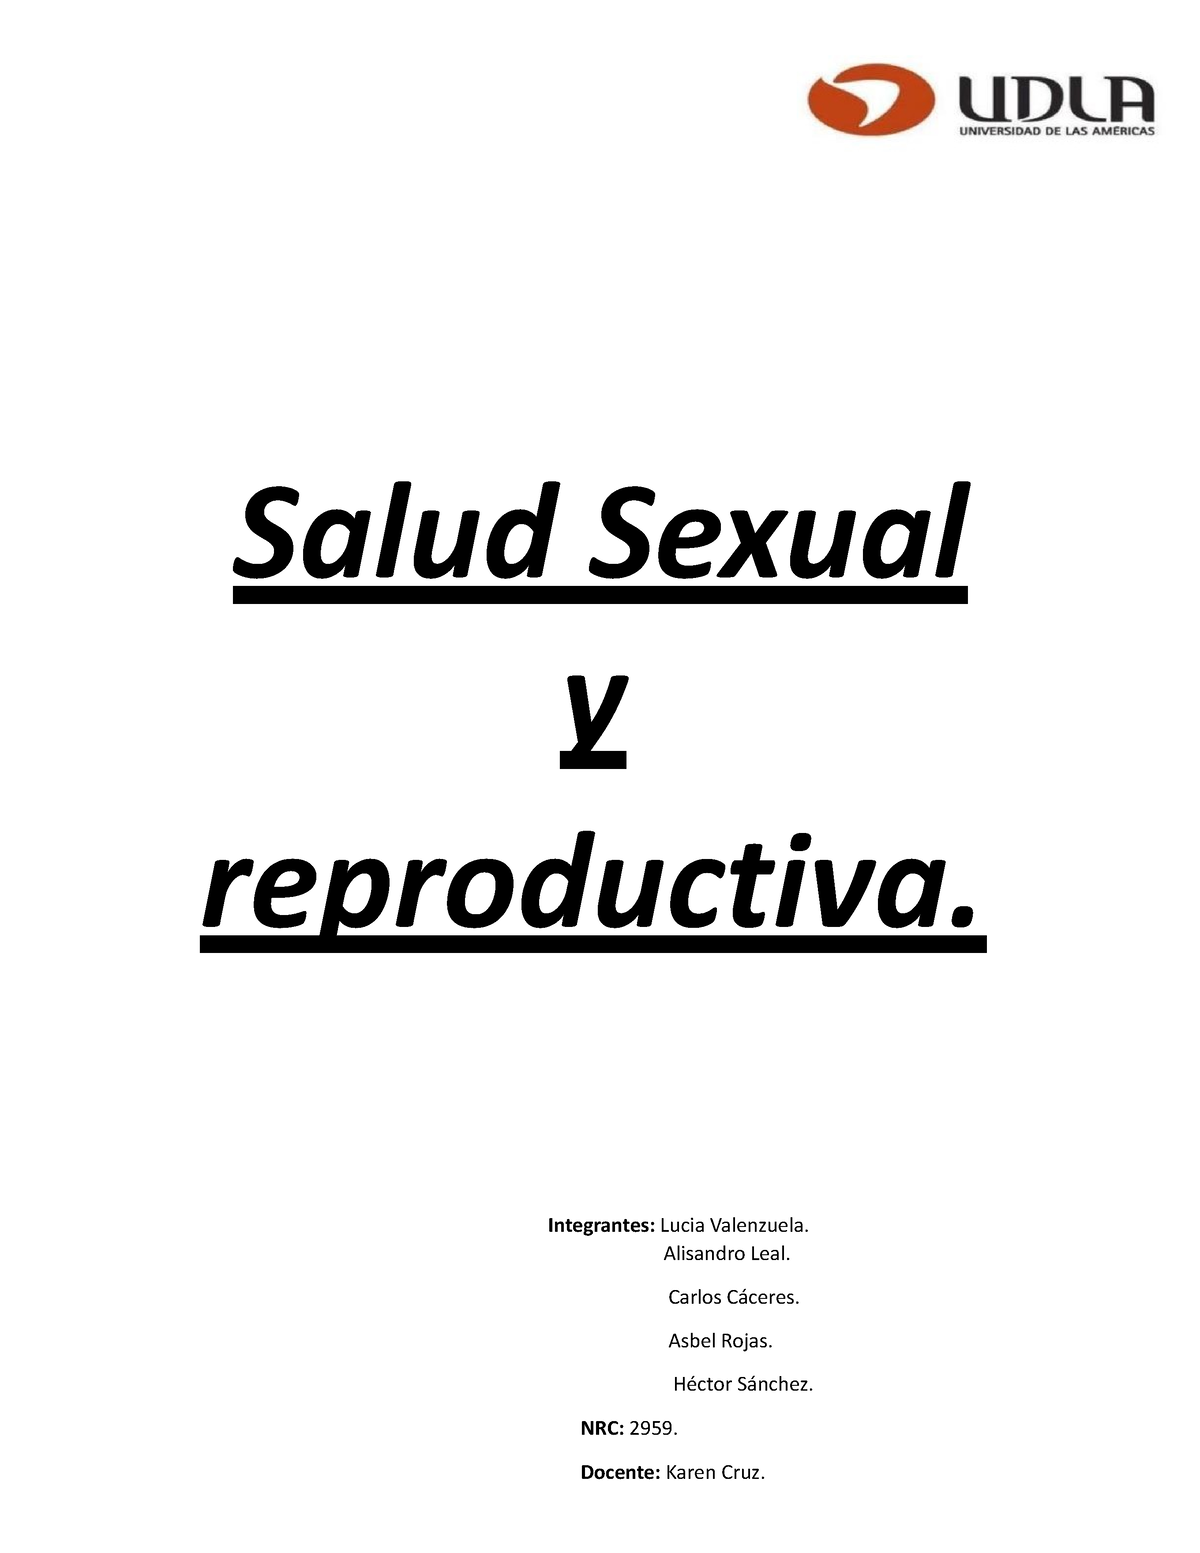 Salud Sexual Y Reproductiva Salud Sexual Y Reproductiva Integrantes Lucia Valenzuela 9285